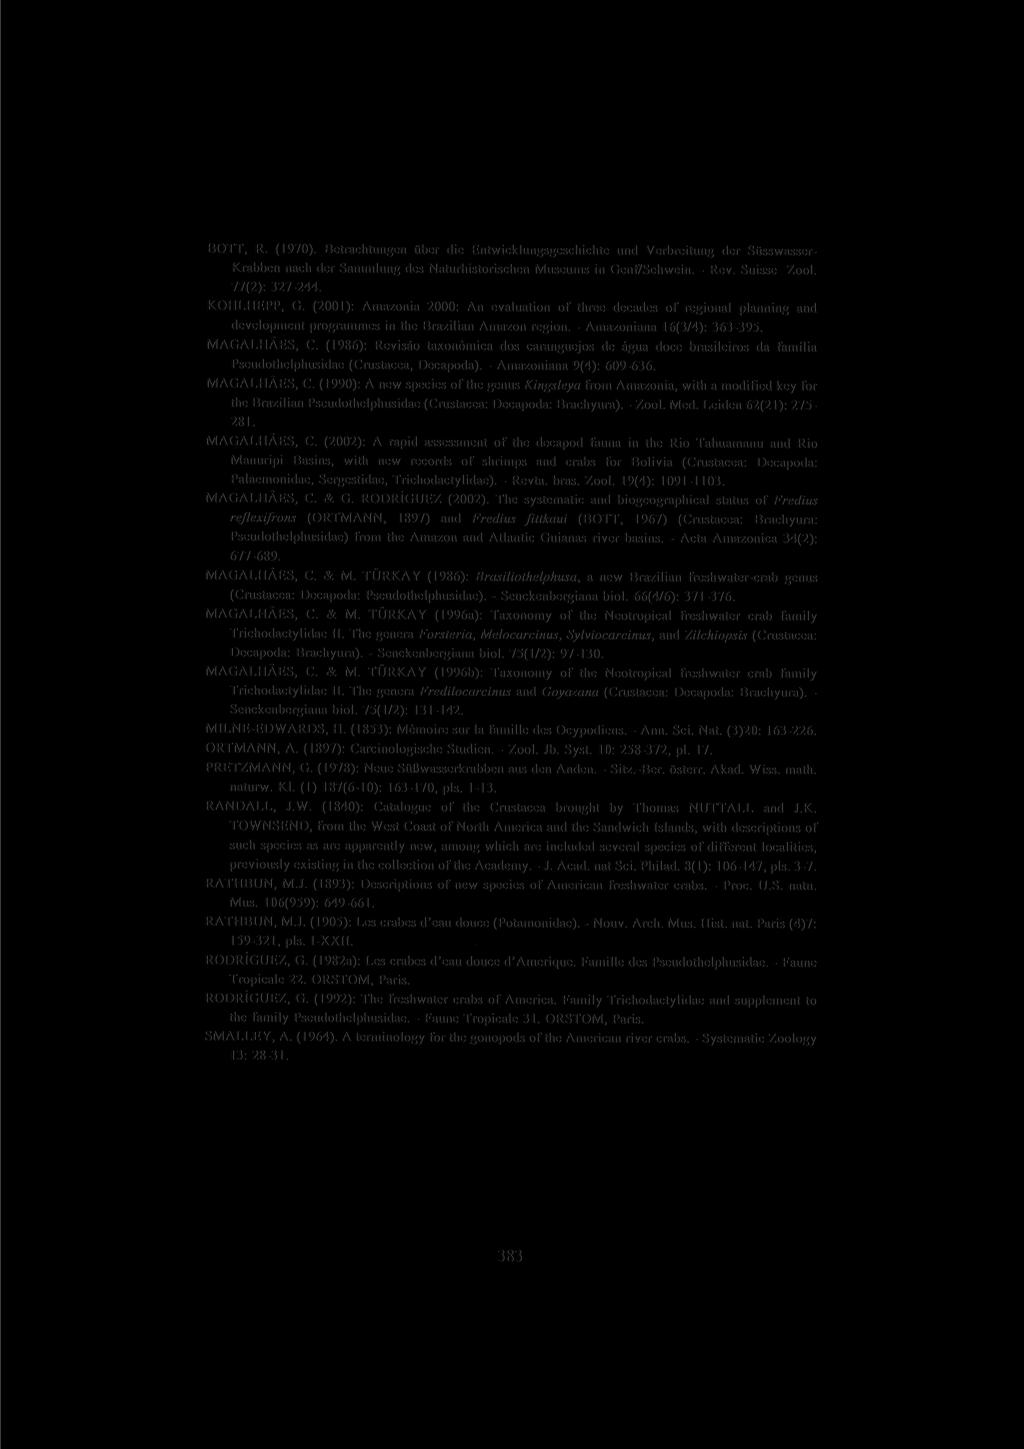 BOTT, R. (1970). Betrachtungen über die Entwicklungsgeschichte und Verbreitung der Süsswasser- Krabben nach der Sammlung des Naturhistorischen Museums in Genf/Schwein. - Rev. Suisse Zool.